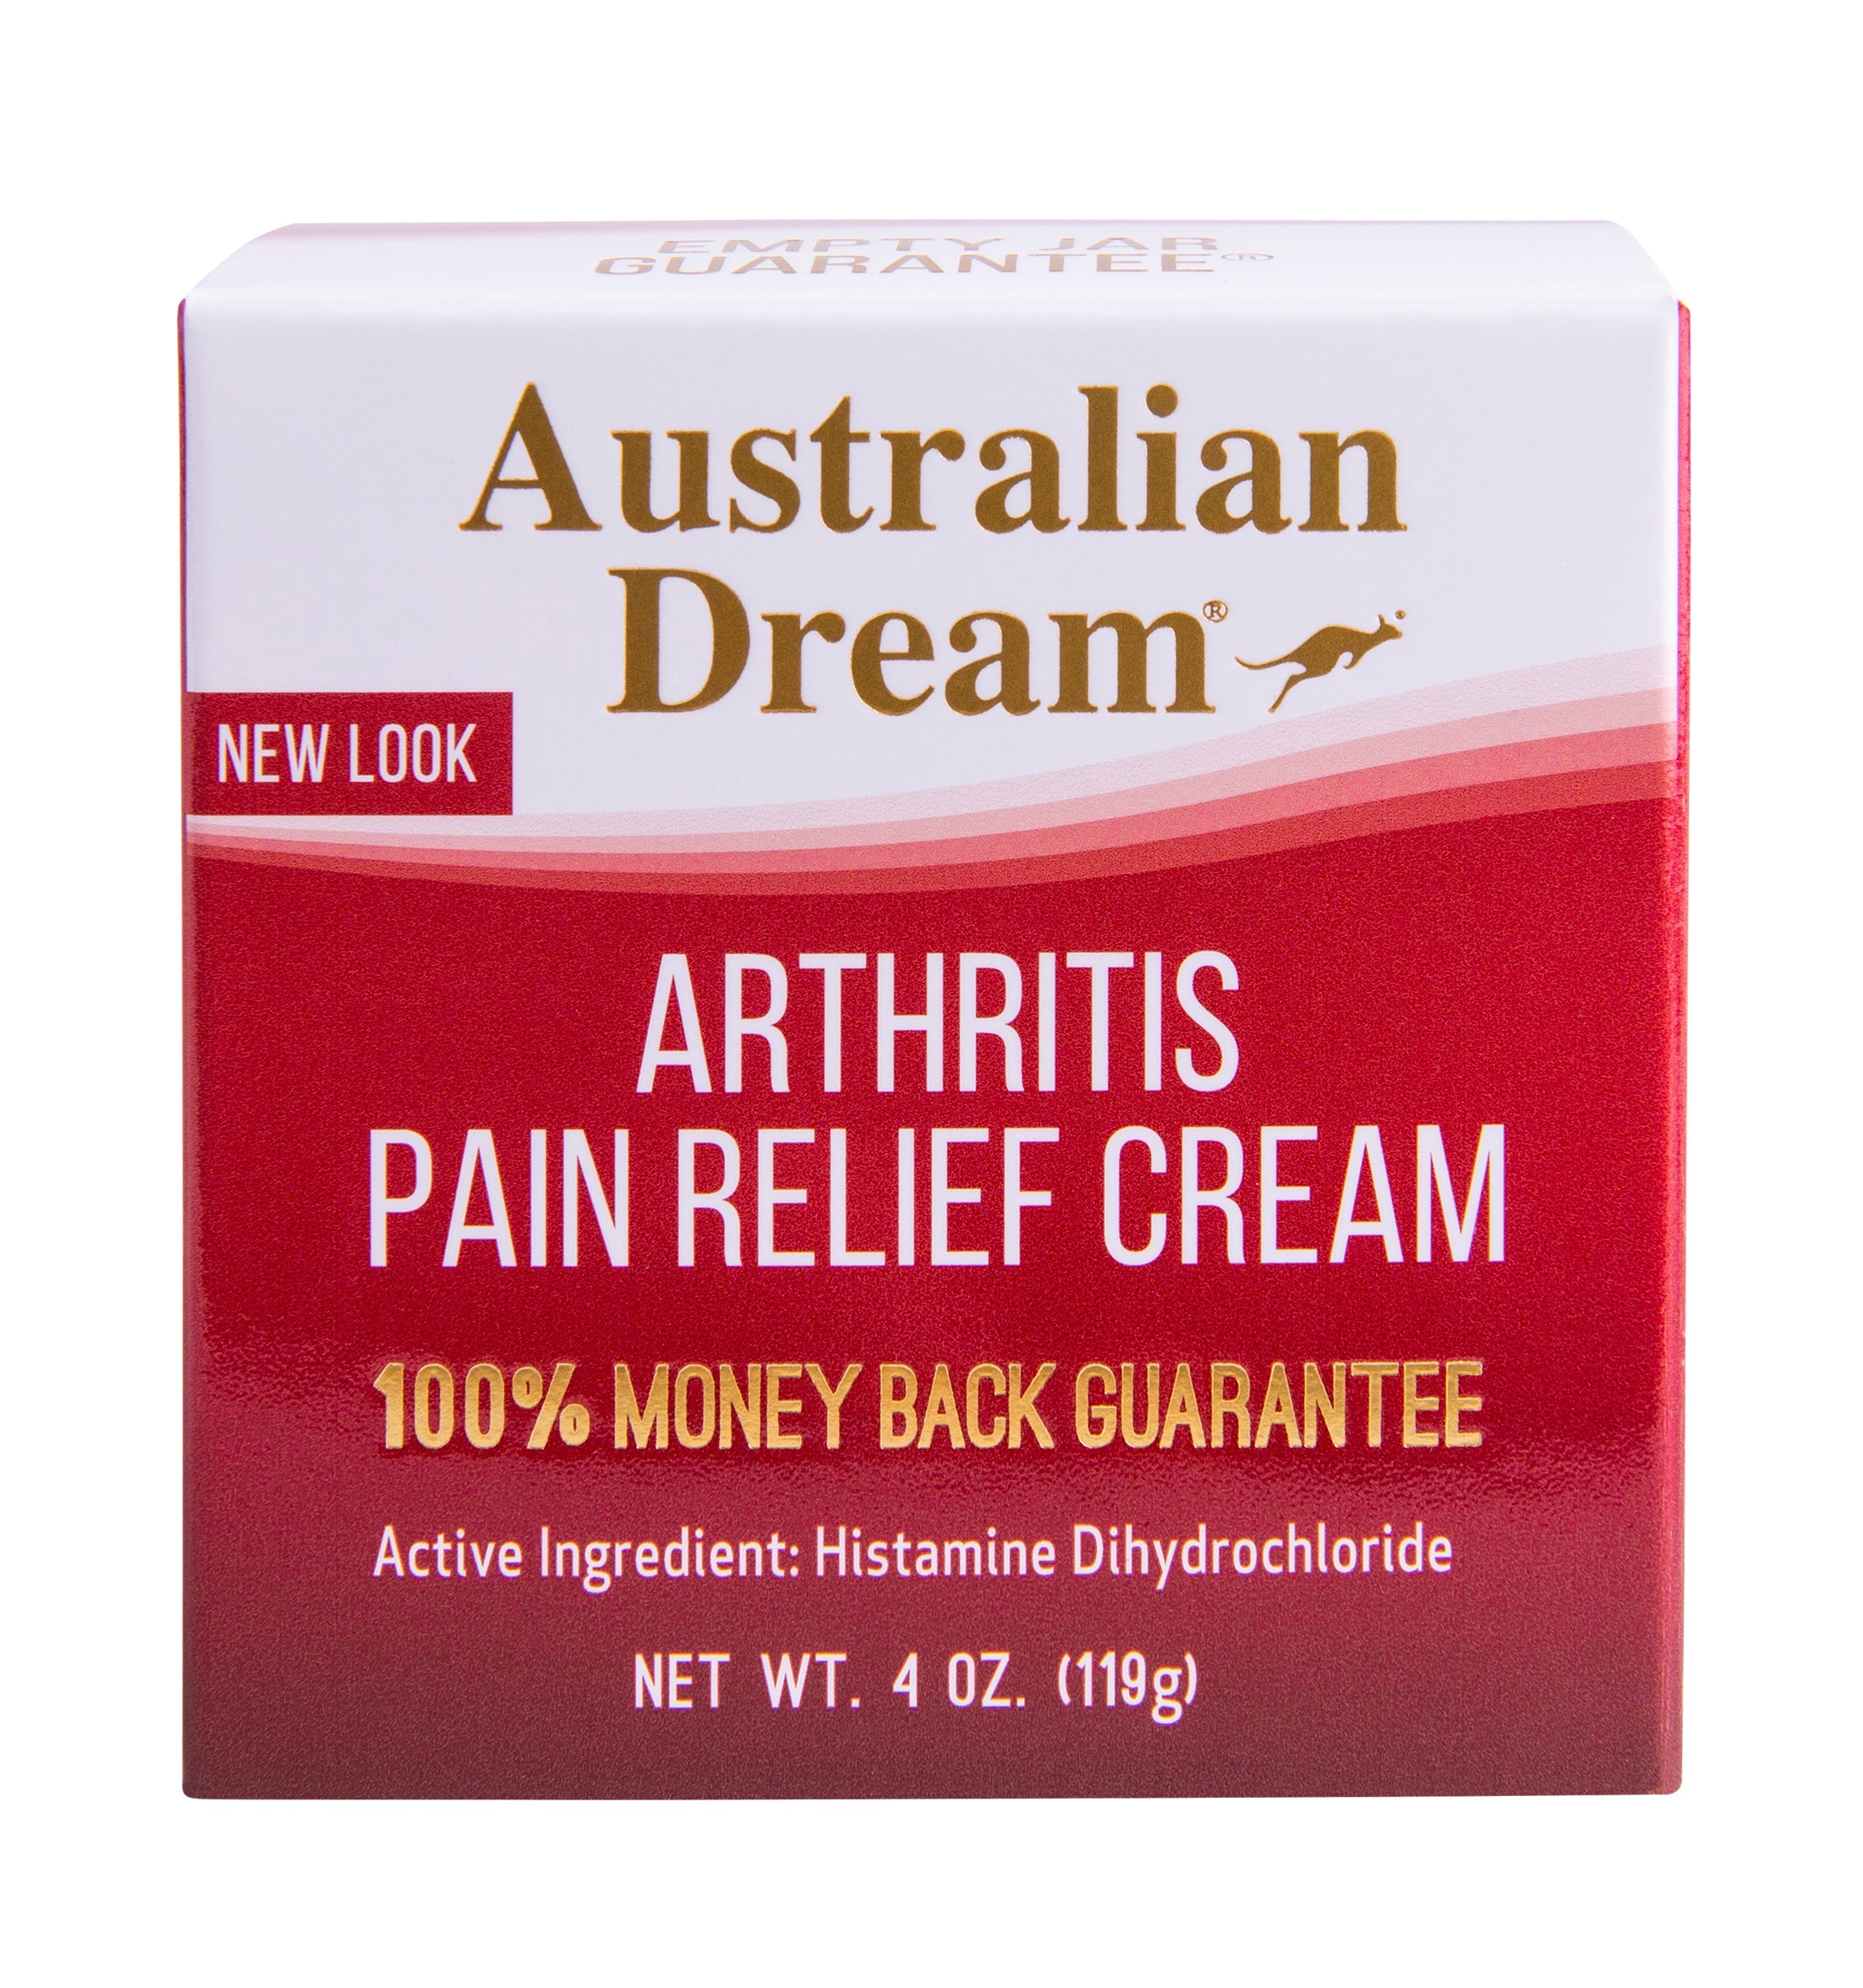 Australian Dream Arthritis Pain Relief Cream, 4 oz